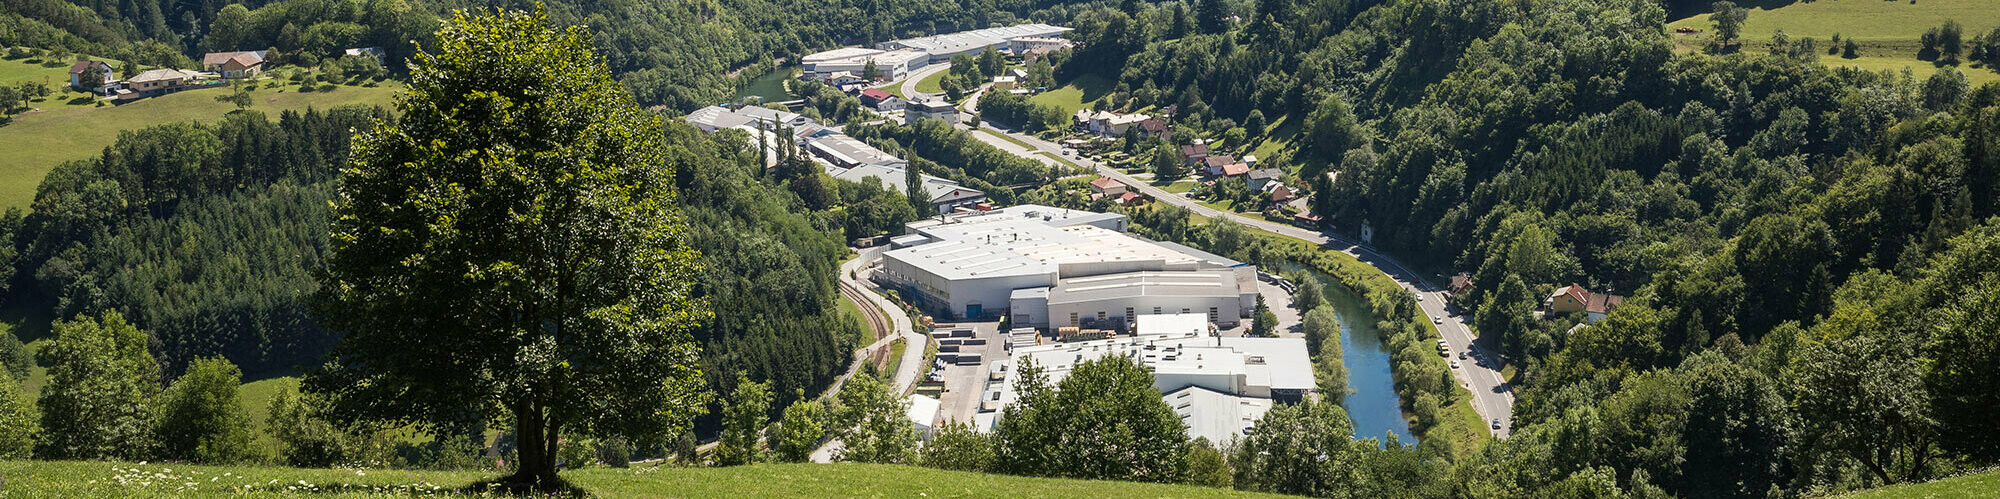 Photo de l'usine PREFA à Marktl depuis l’une des collines environnantes, avec arbre sur espace vert au premier plan et grandes forêts de Lilienfelder en arrière-plan